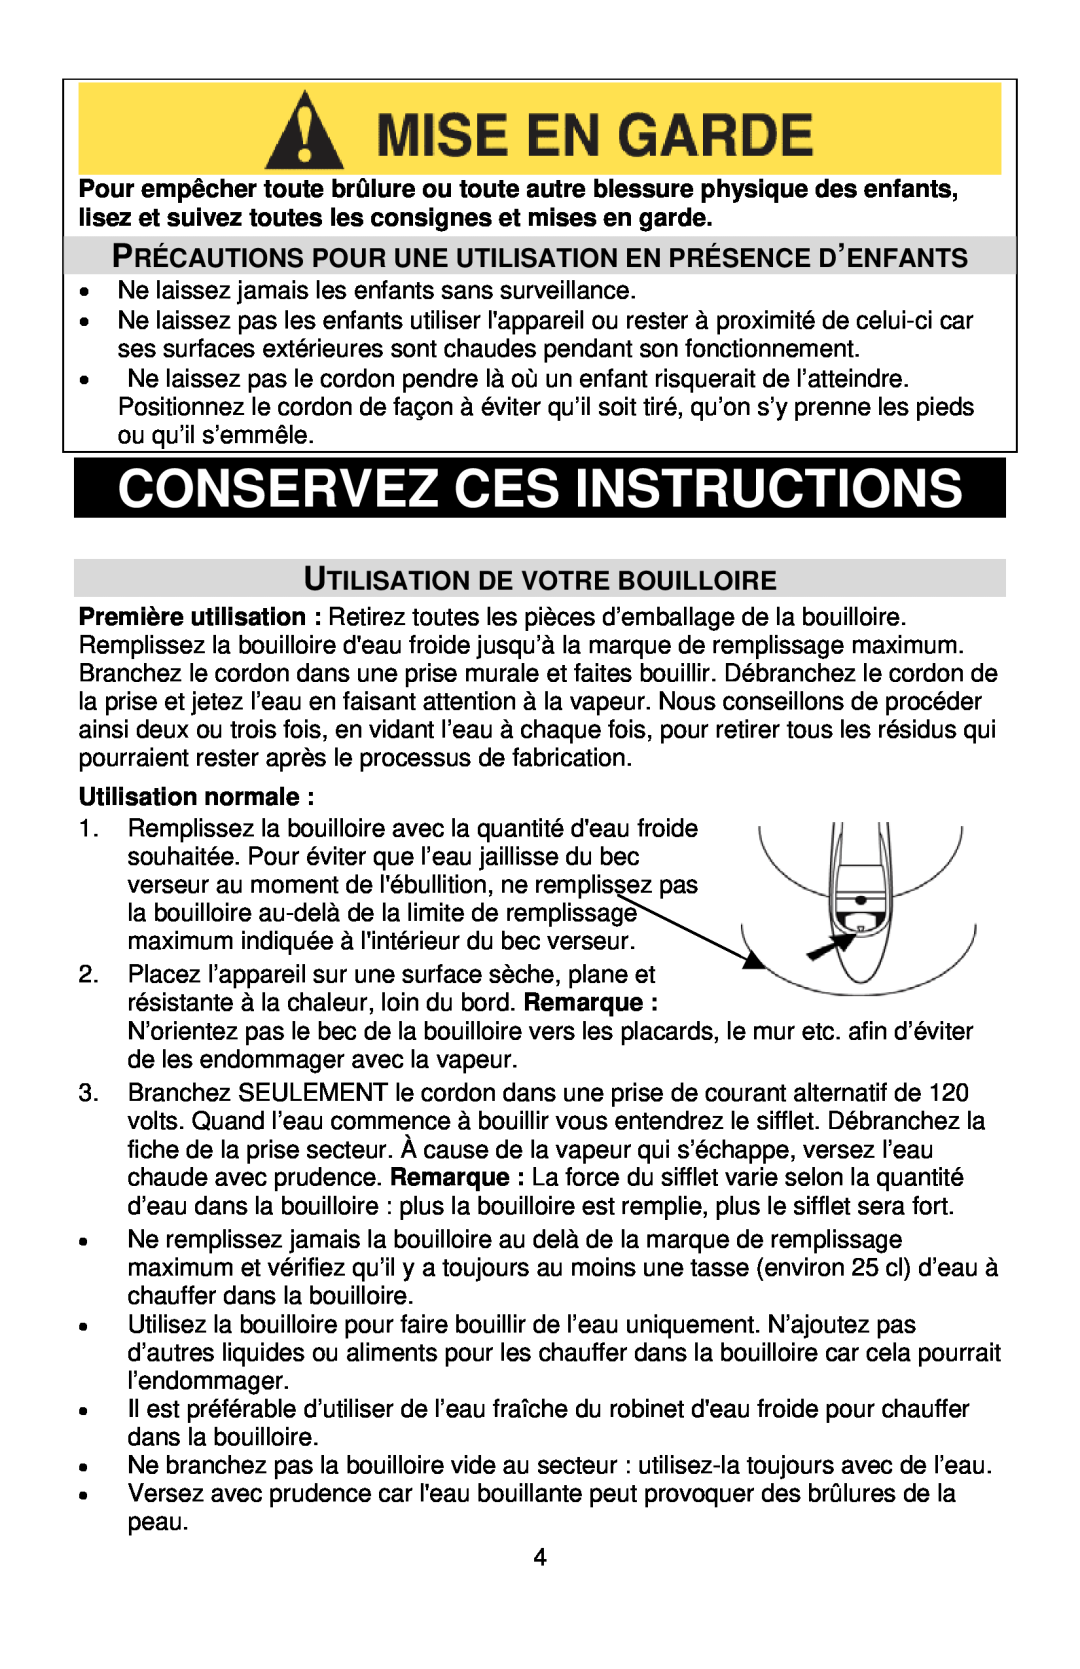 West Bend 6400 instruction manual Conservez Ces Instructions, Utilisation De Votre Bouilloire, Utilisation normale 